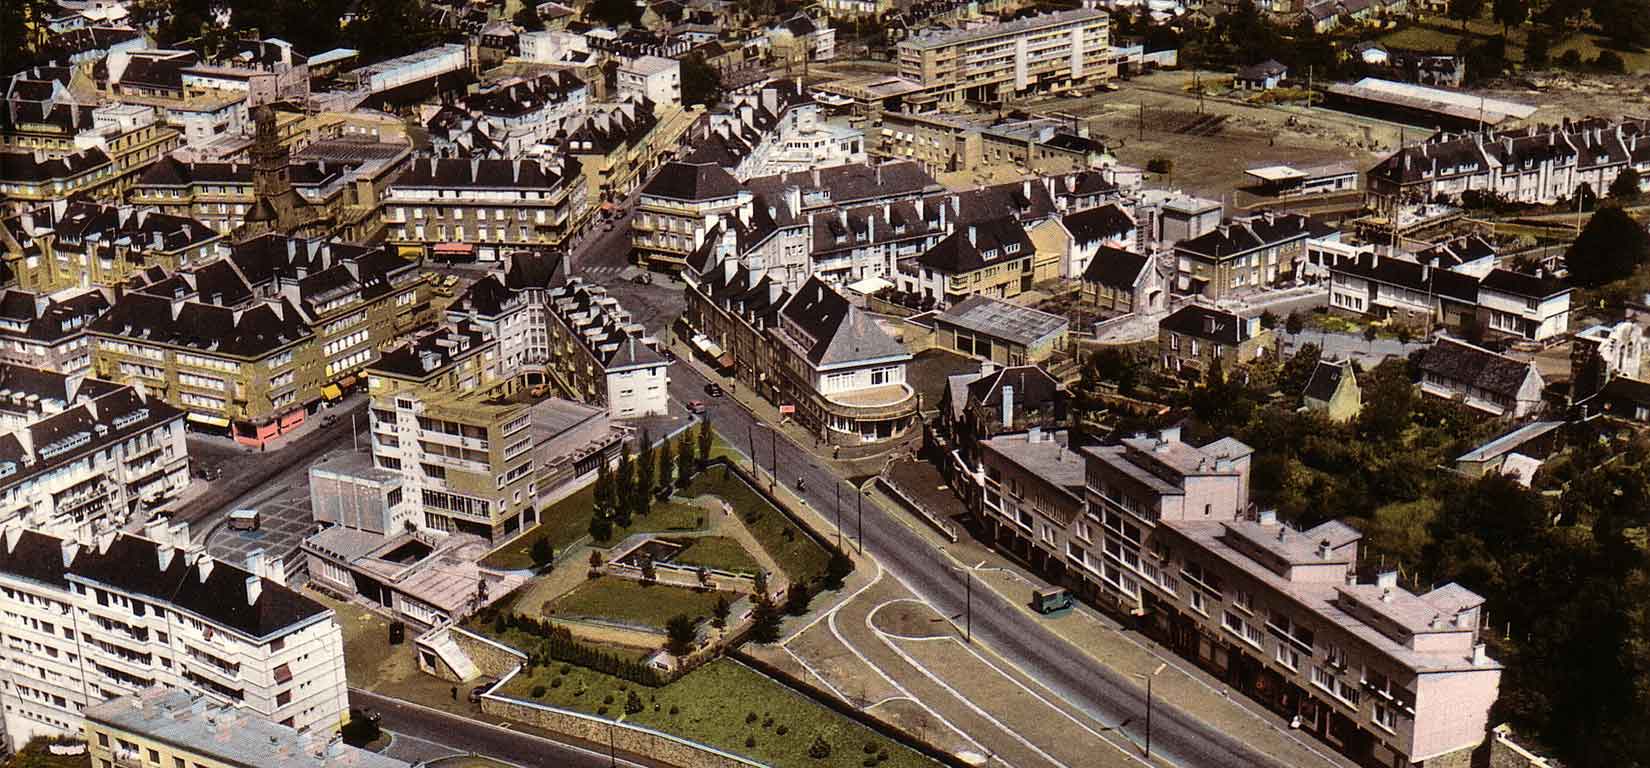 Vue aerienne de l'hotel de ville de Vire Normandie en 1960